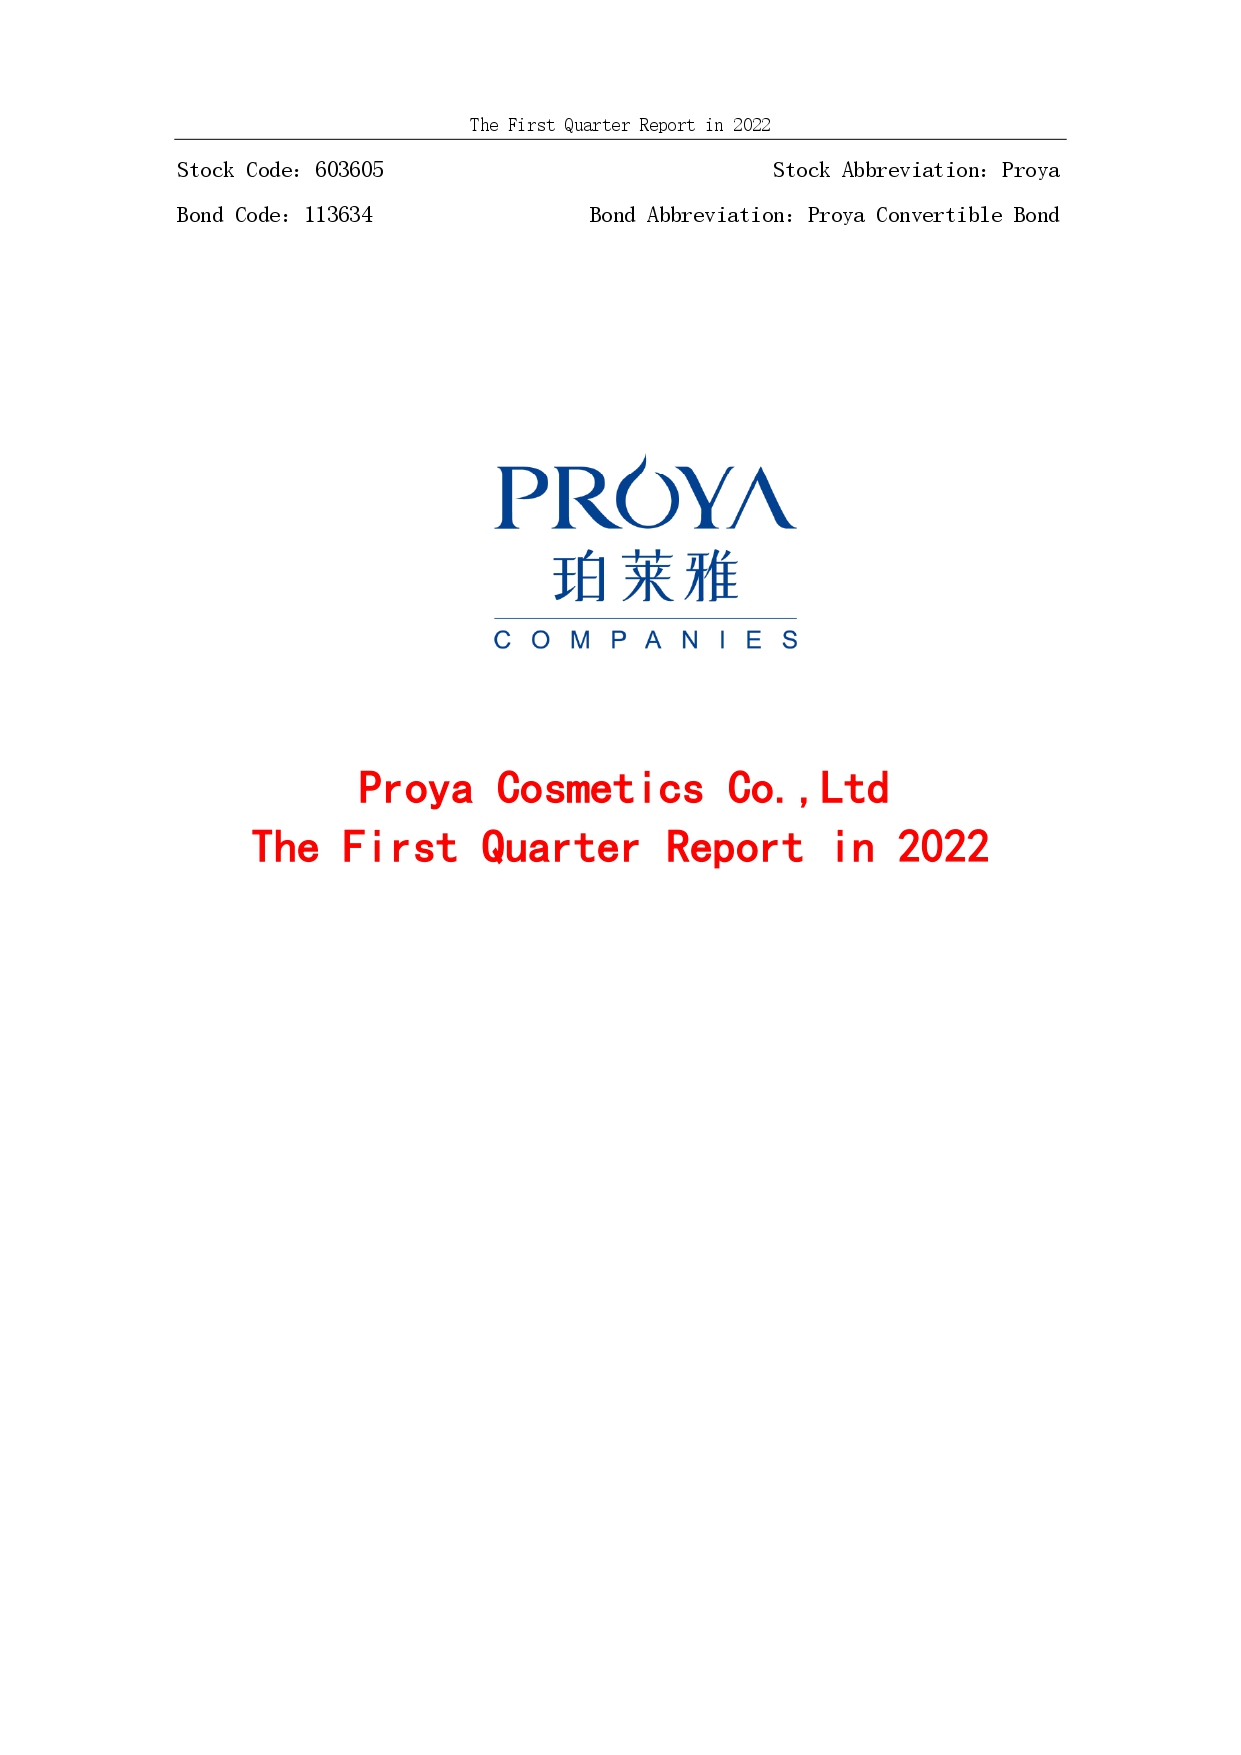 2022年第一季度报告封面_page-0001.jpg